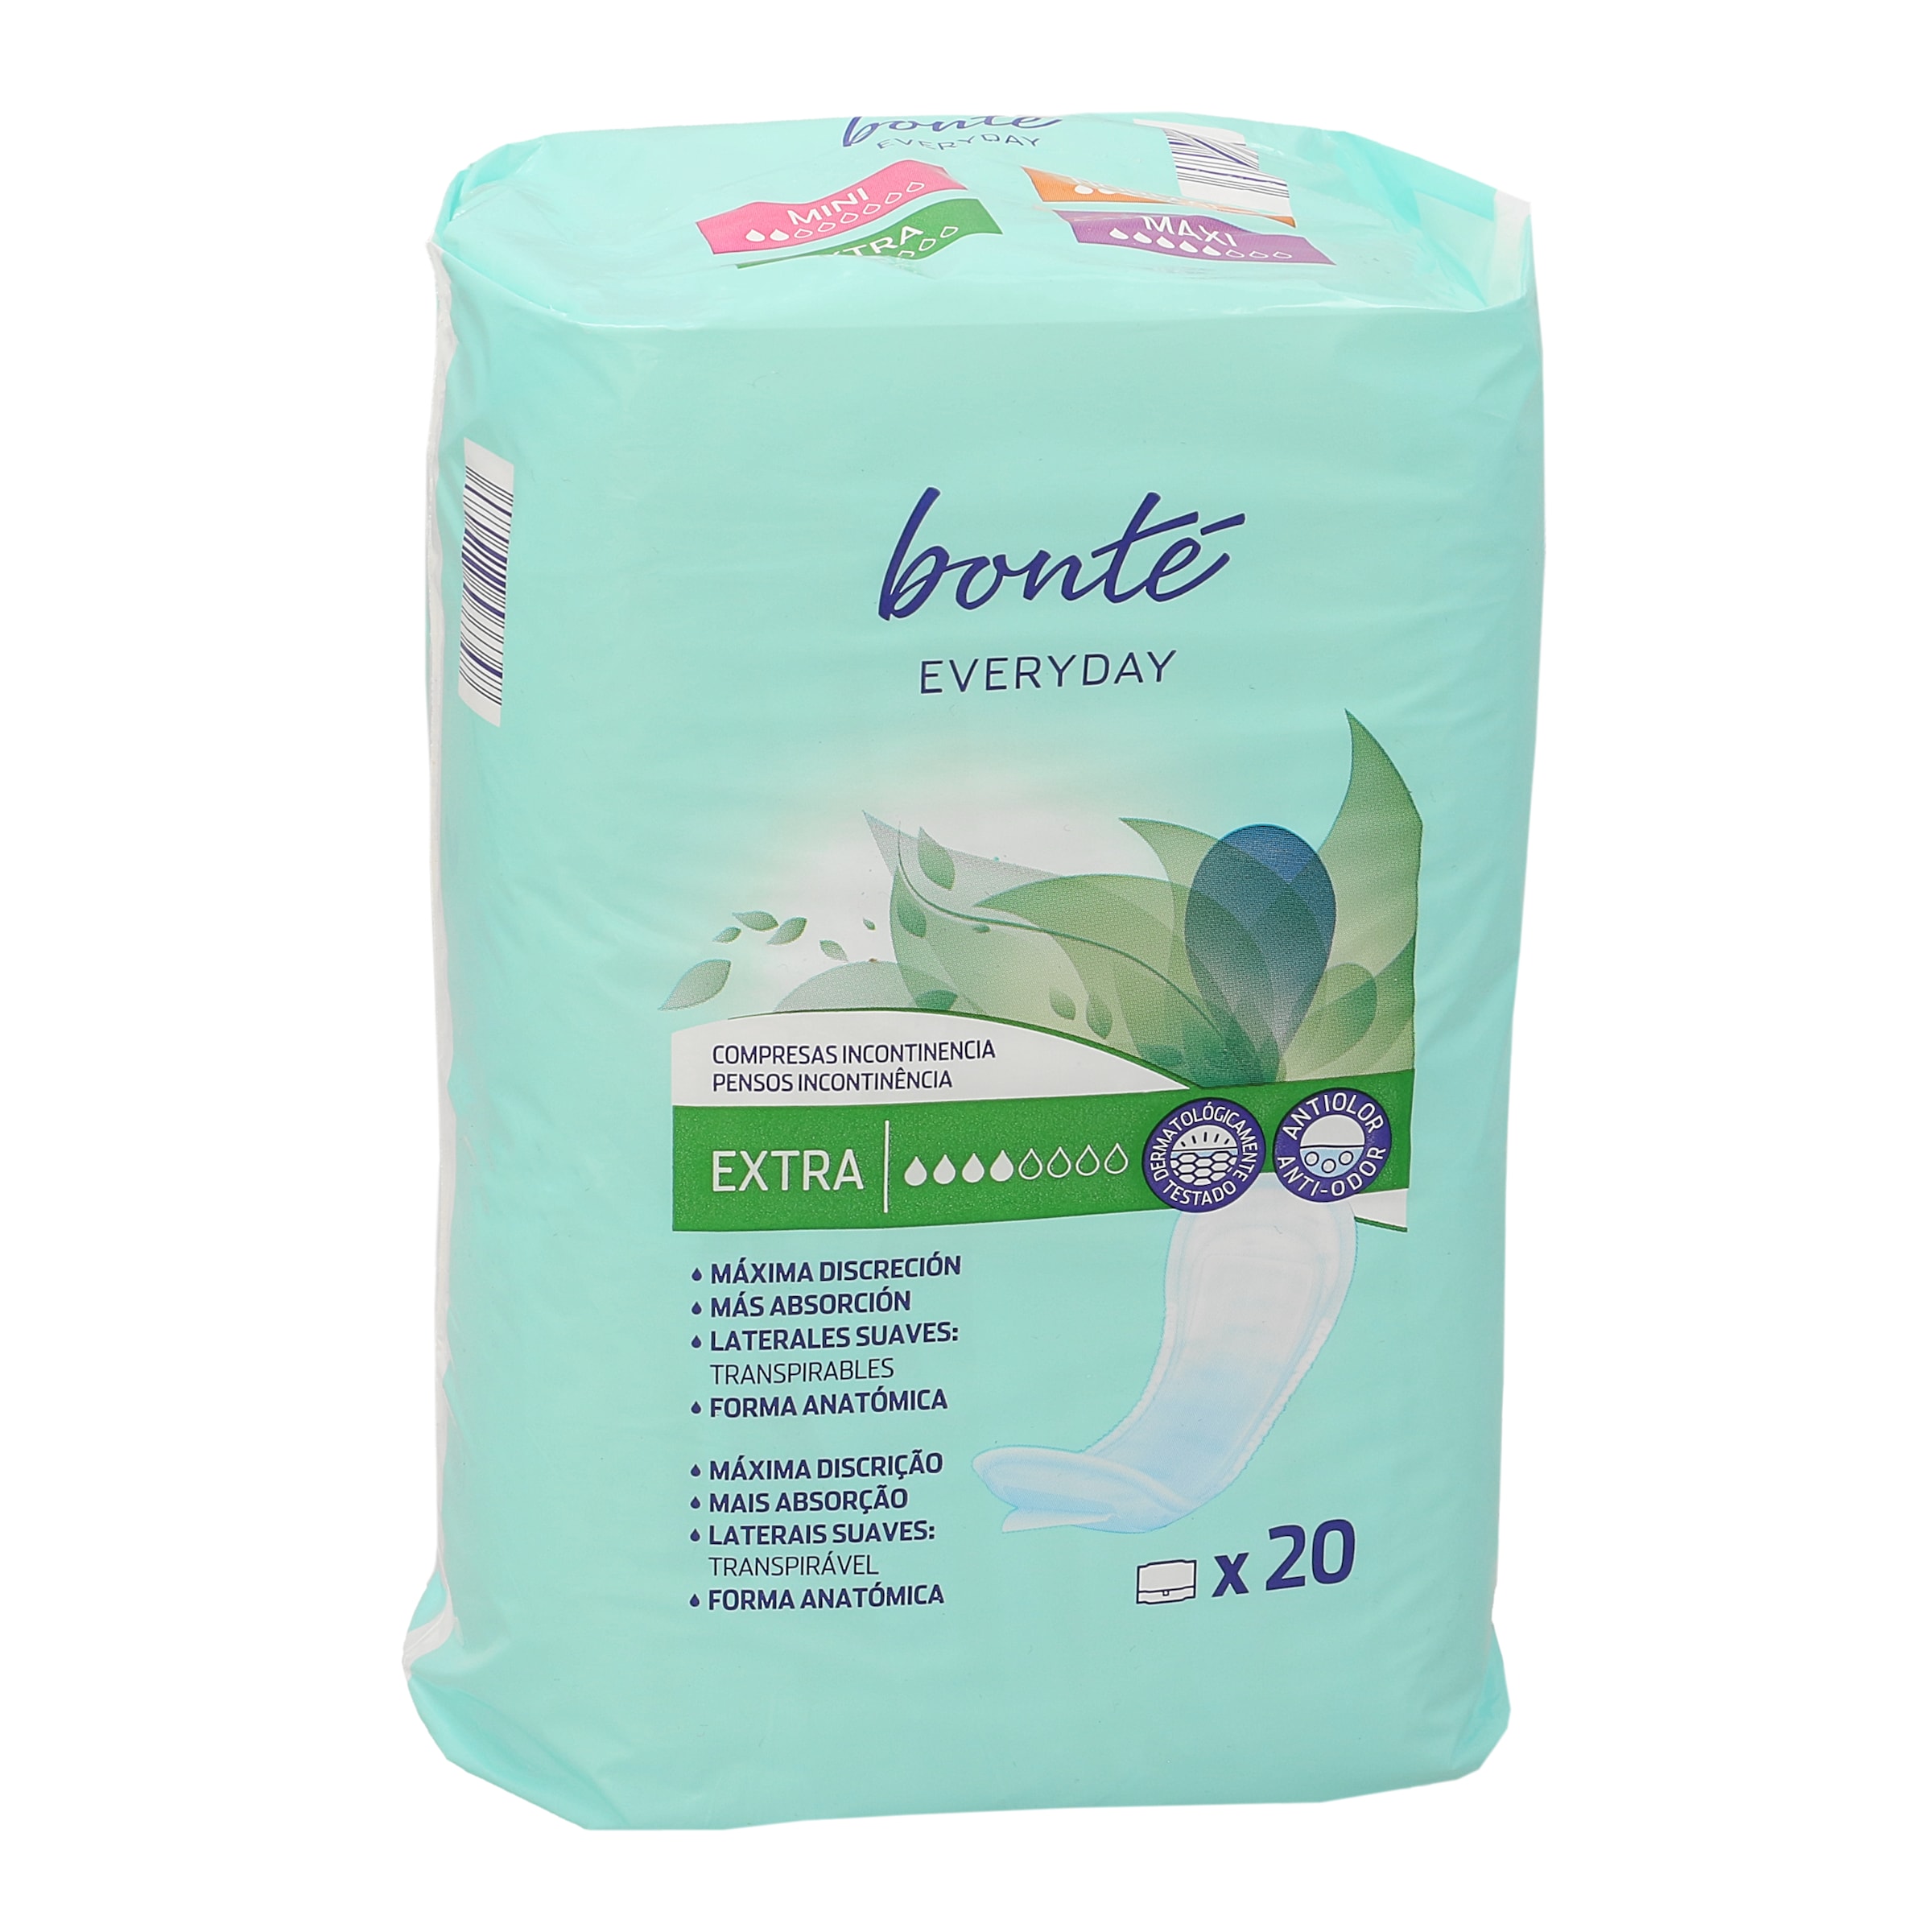 Compresas de incontinencia para hombres Bonté Homme bolsa 10 unidades -  Supermercados DIA